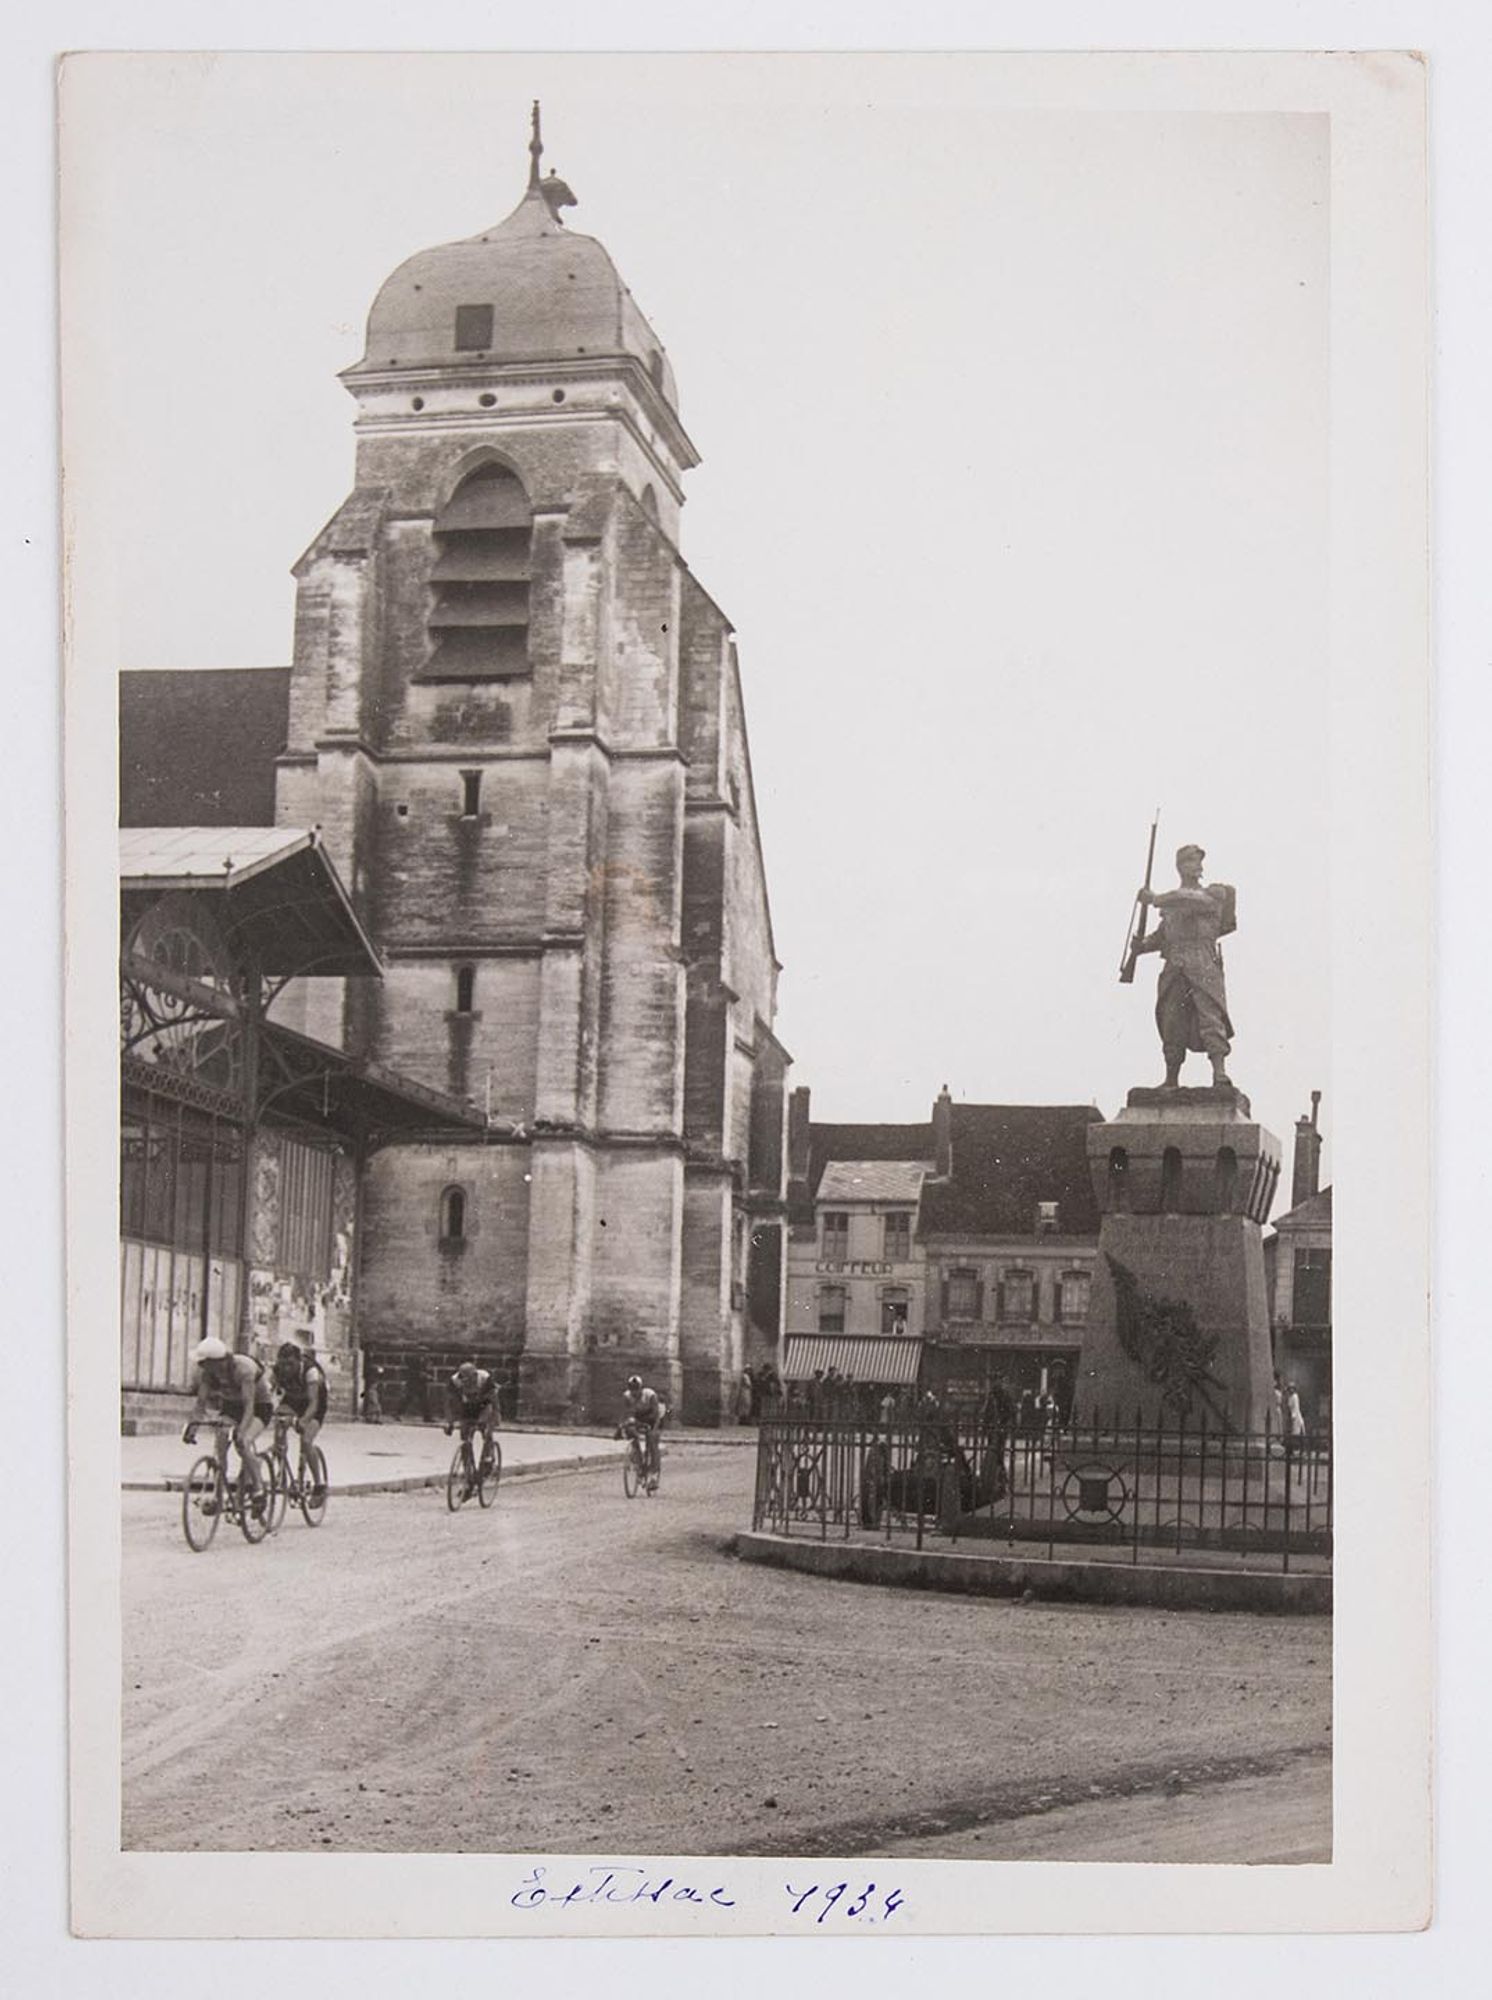 1934. Passage d'un groupe de coureurs cyclistes devant l'église, le marché et le monument aux morts d'Aix-en-Othe.